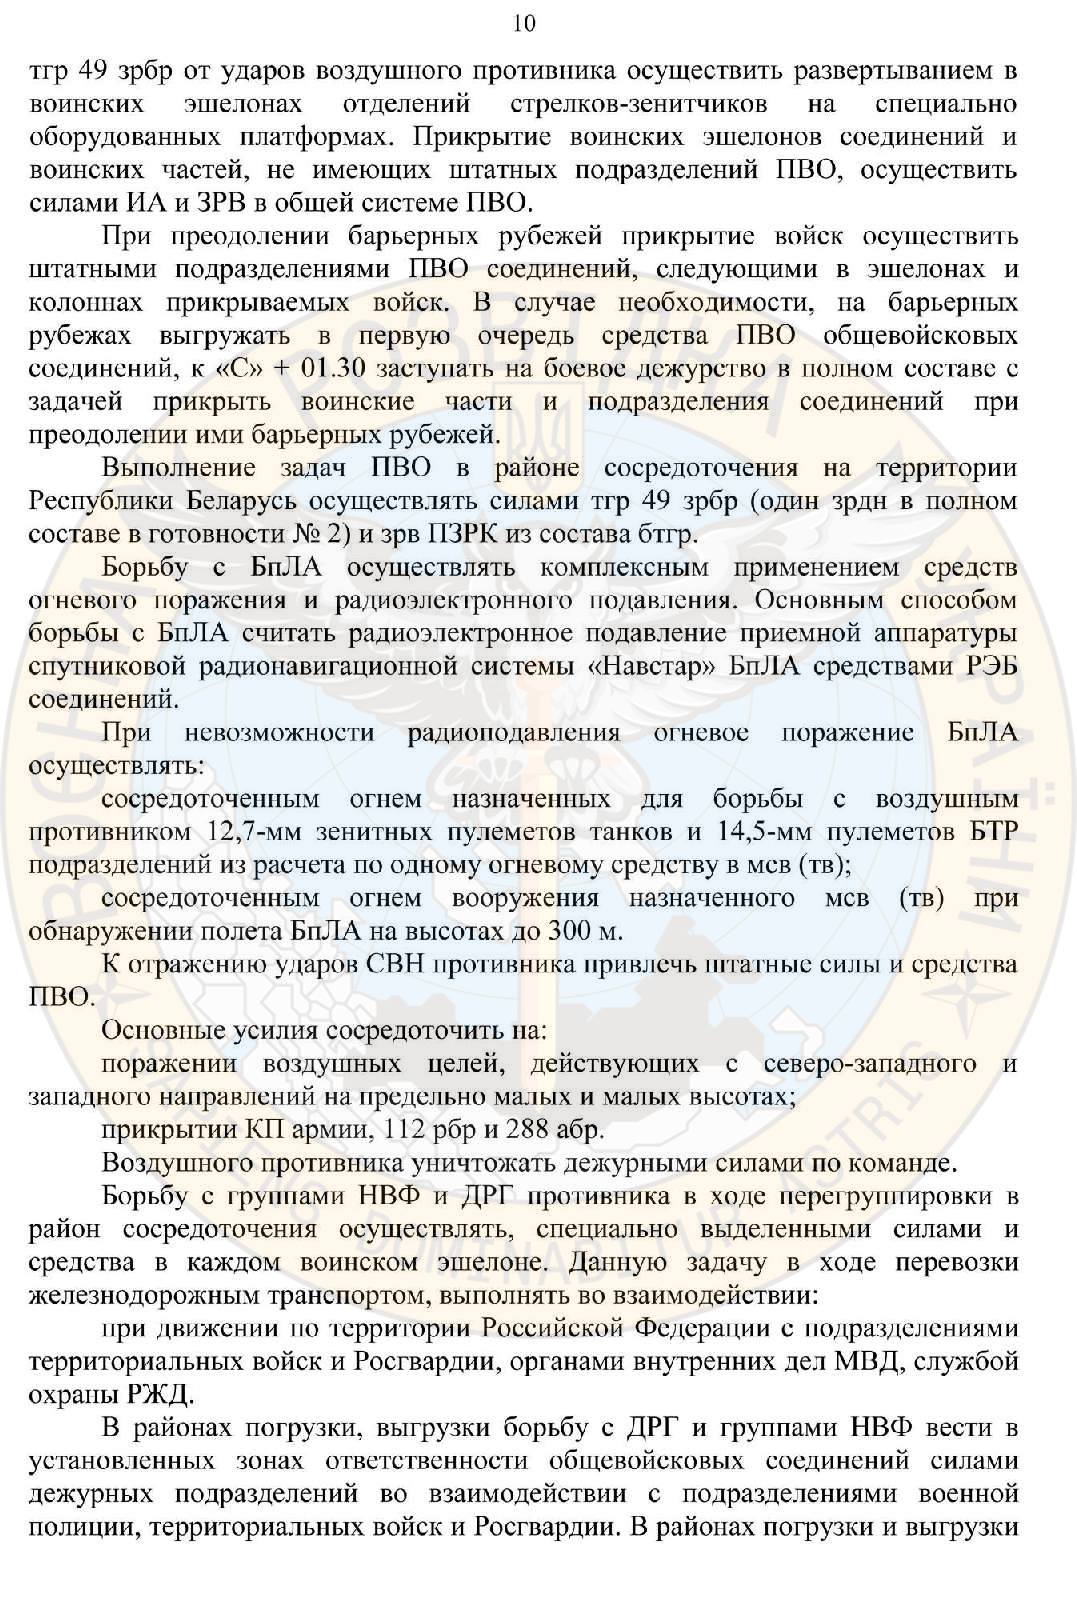 ГУР: армия РФ планировала вторжение в Беларусь (документ) - 10 - изображение